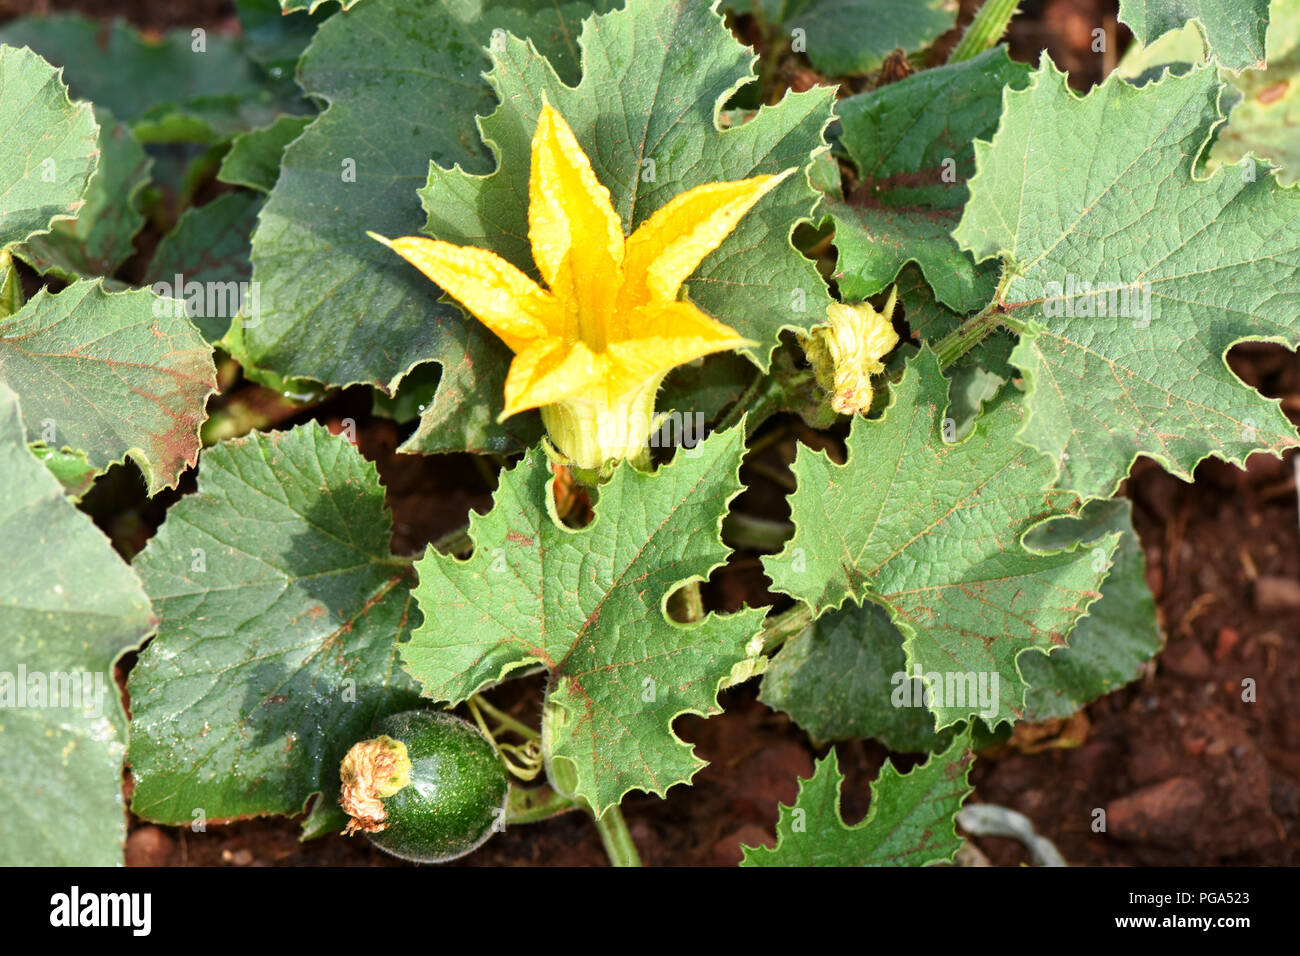 Una joya squash flor en un espléndido jardín de vegetales en amarillo con el telón de fondo de verdes hojas frescas y ricos suelos. Una abeja es alrededor de zoom Foto de stock